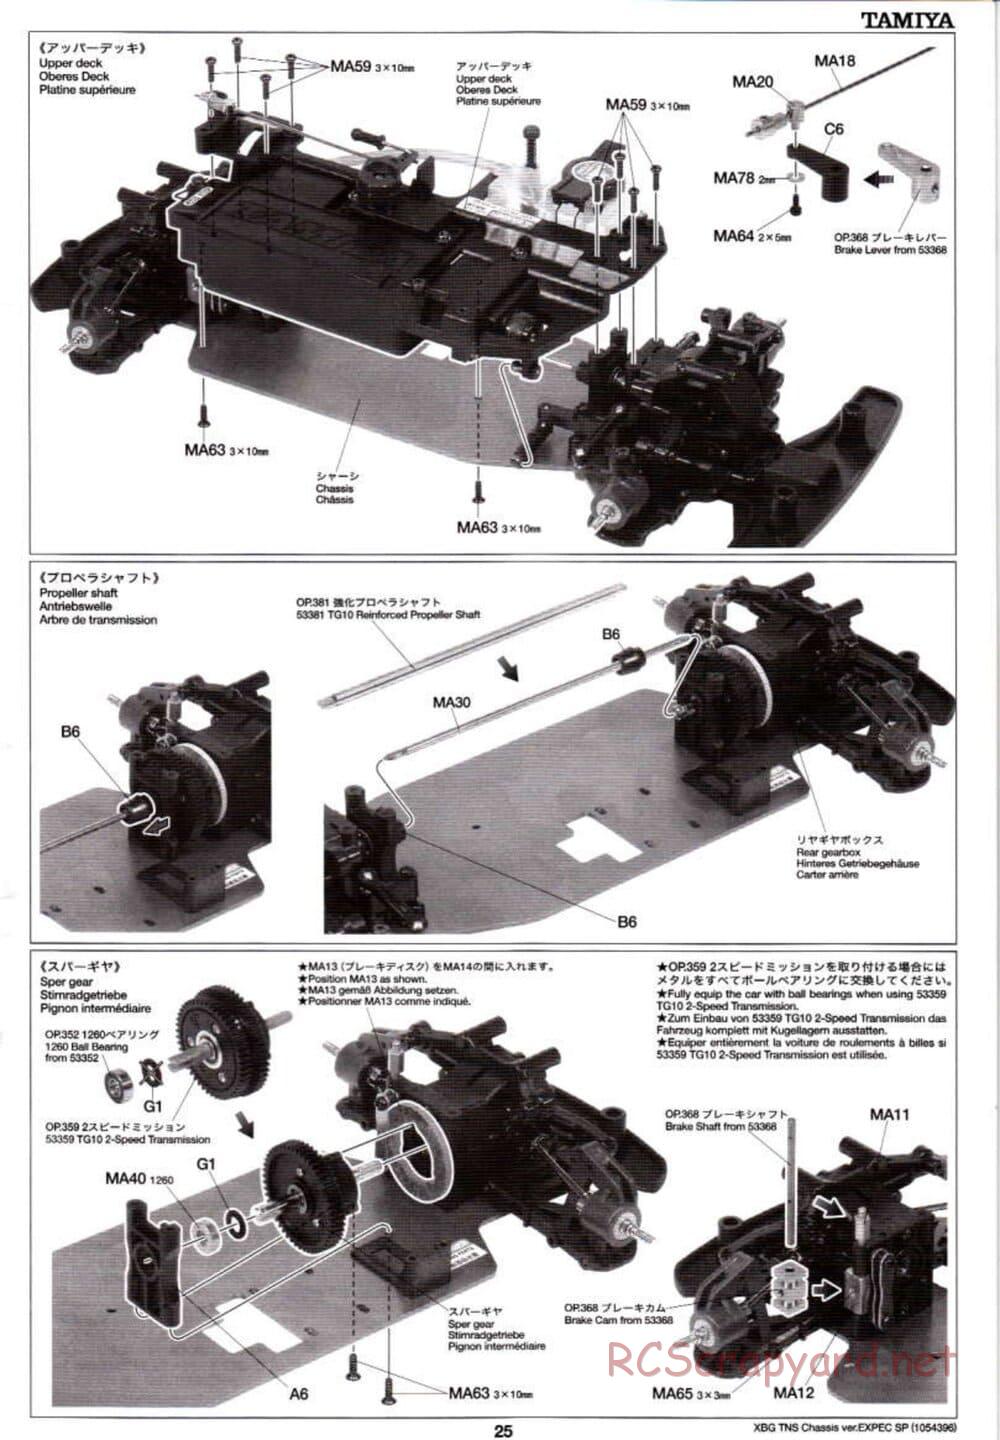 Tamiya - TNS Chassis - Manual - Page 25